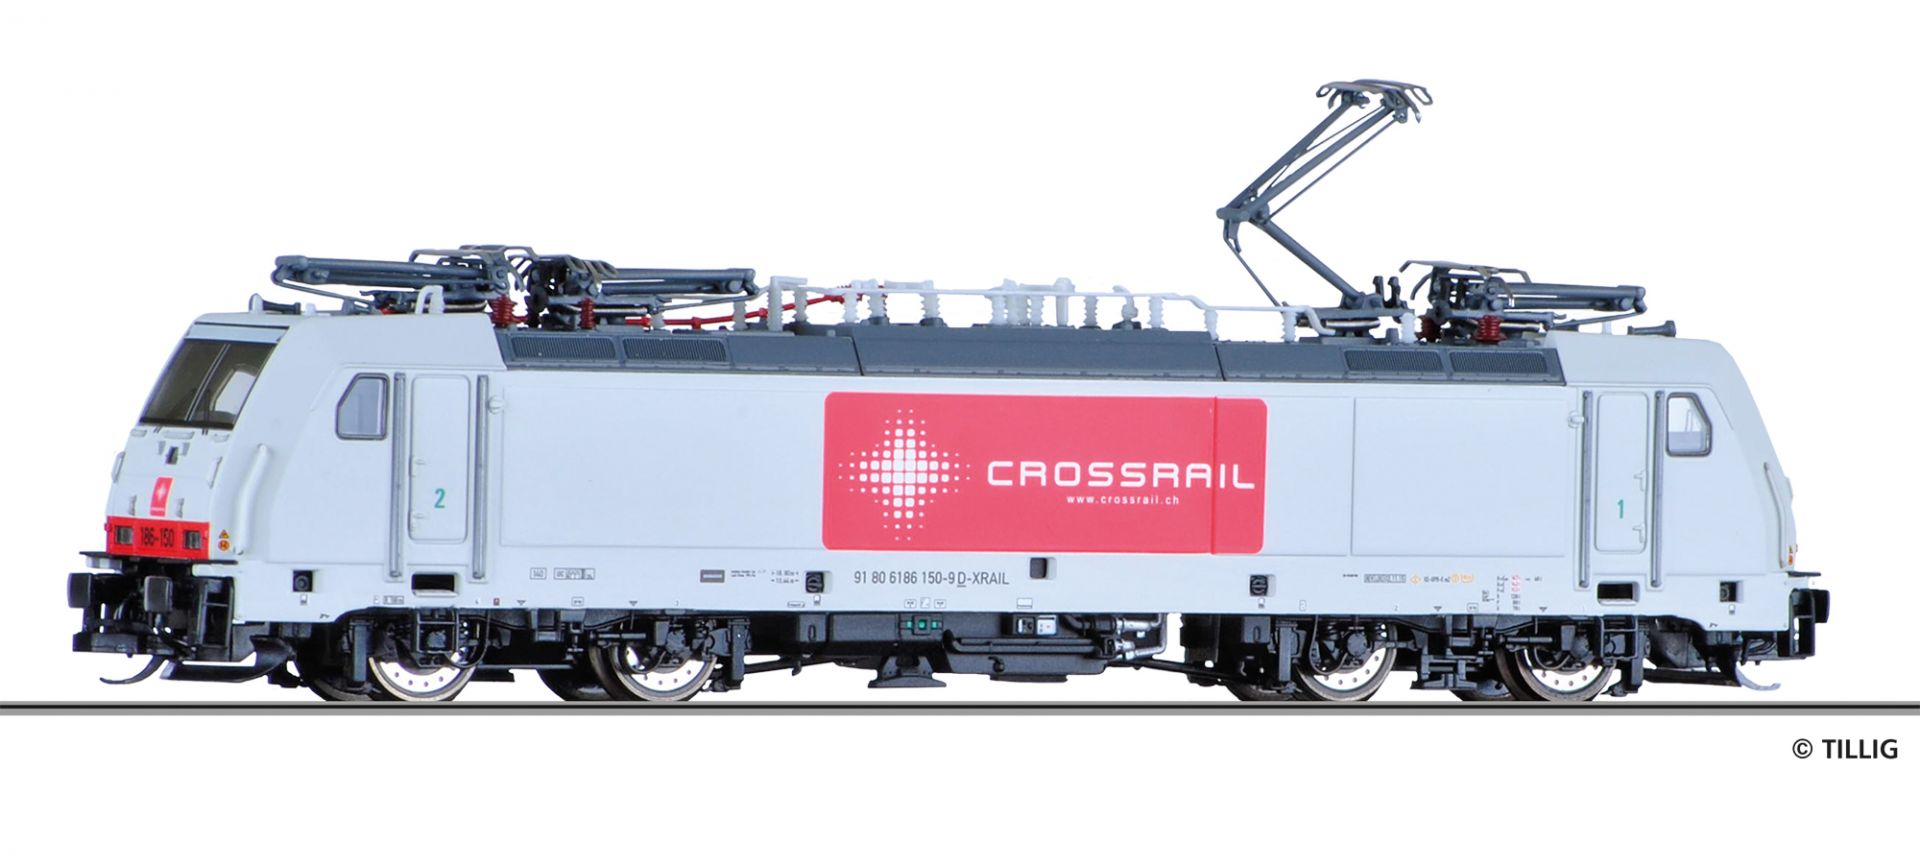 04921 | Elektrolokomotive Crossrail -werksseitig ausverkauft-